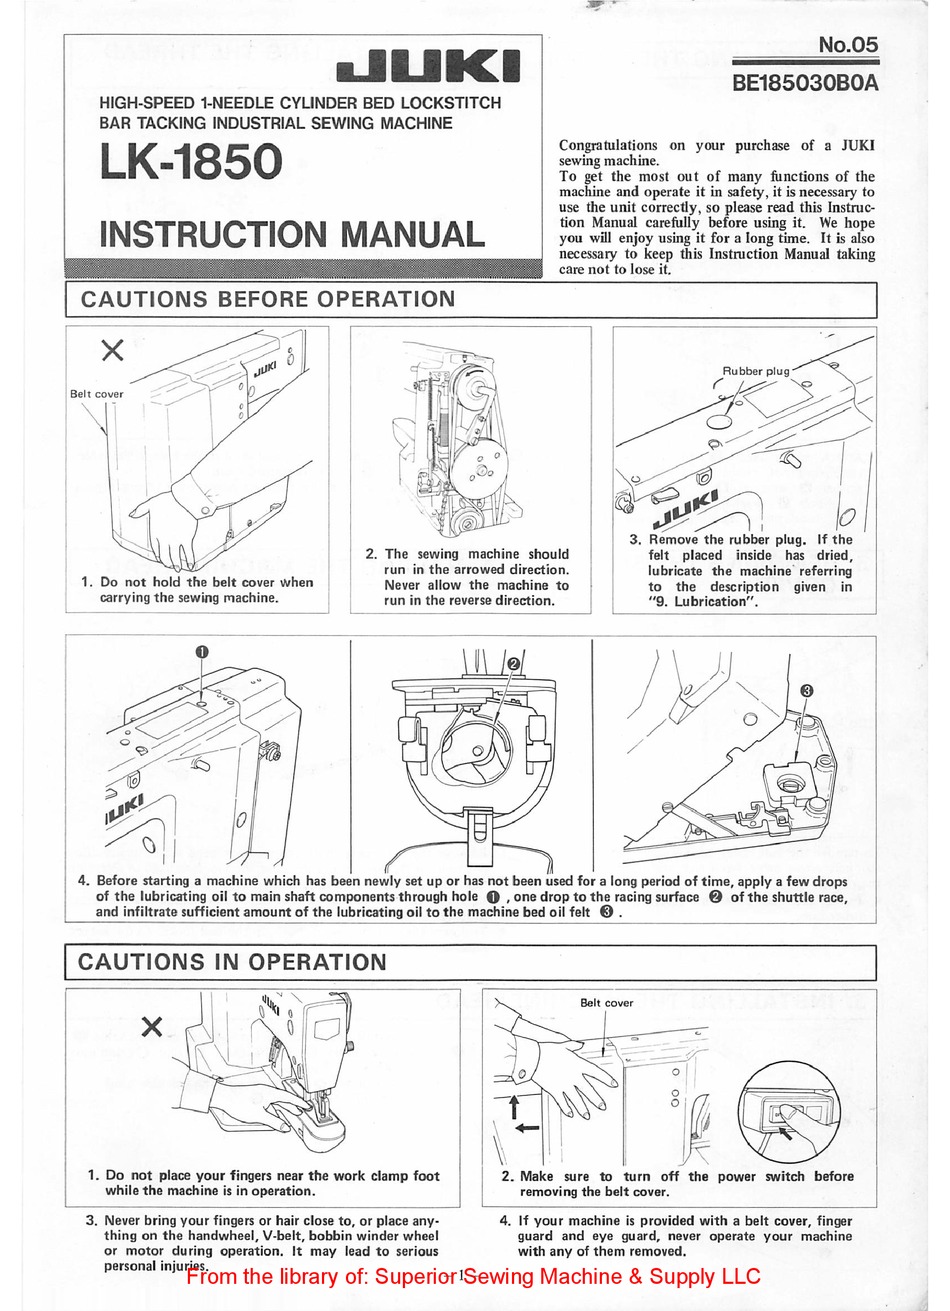 JUKI LK-1850 INSTRUCTION MANUAL Pdf Download | ManualsLib